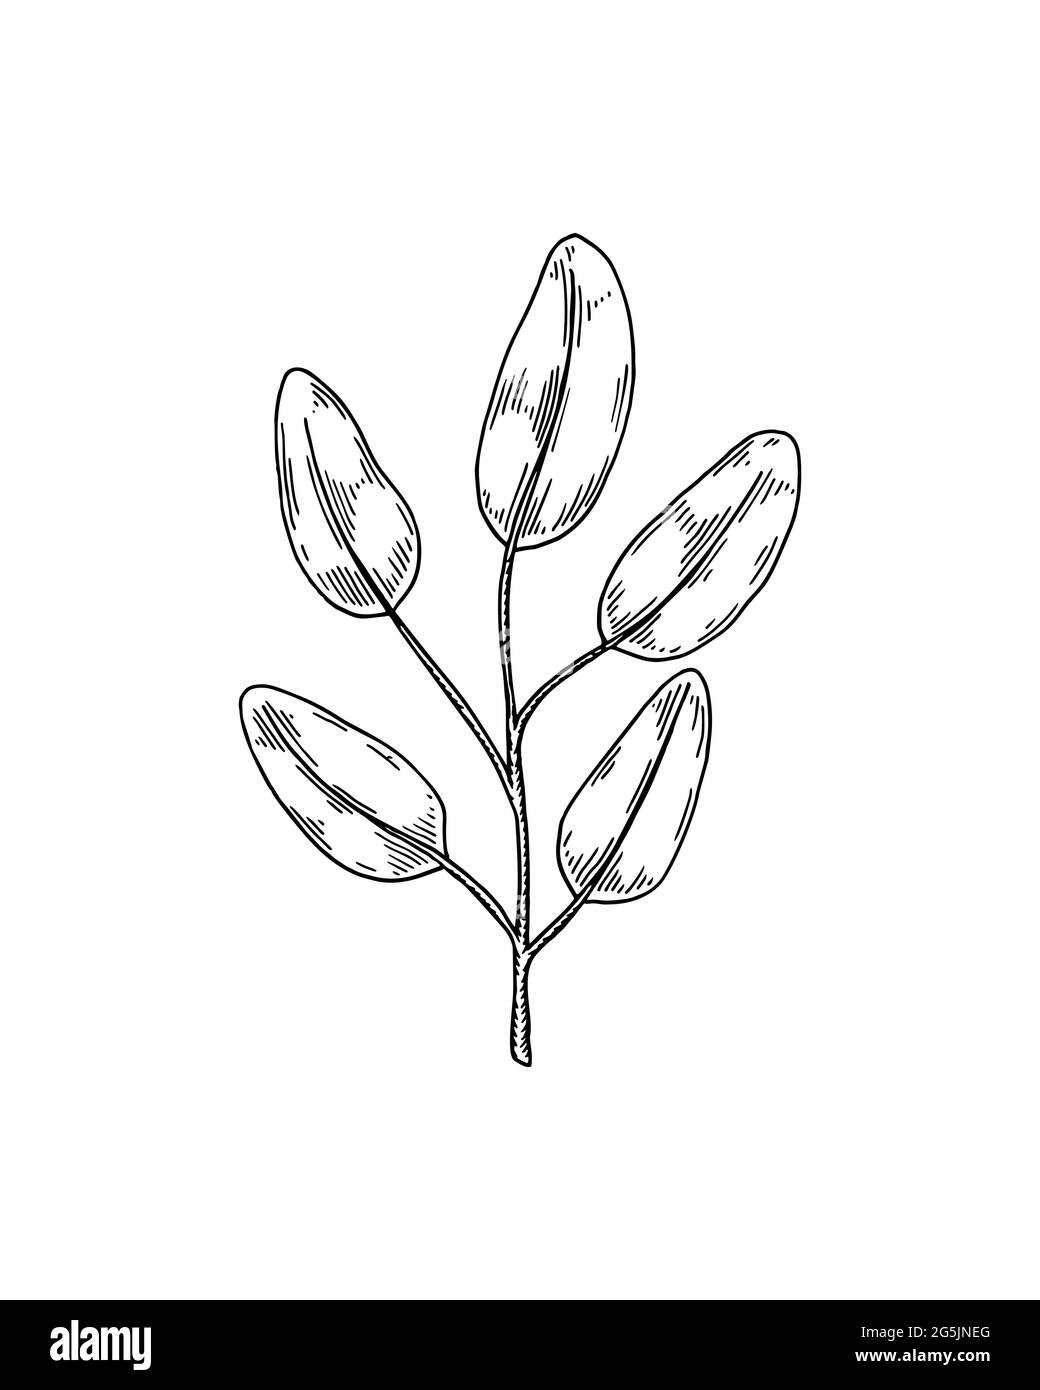 Handgezeichneter Zweig mit isolierten Blättern auf weißem Hintergrund. Vektorgrafik im Skizzenstil Stock Vektor